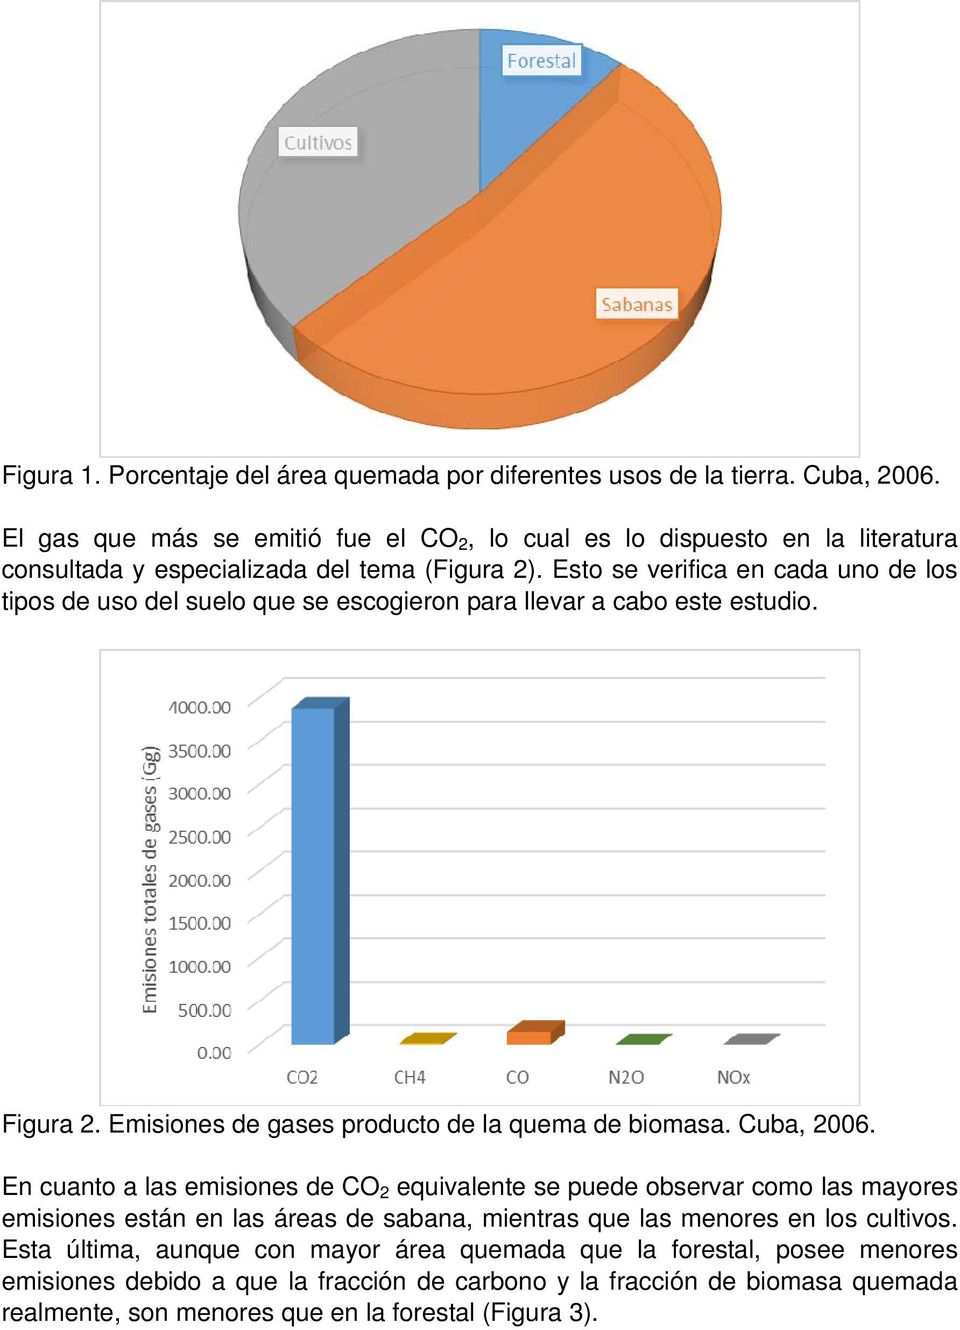 Esto se verifica en cada uno de los tipos de uso del suelo que se escogieron para llevar a cabo este estudio. Figura 2. Emisiones de gases producto de la quema de biomasa. Cuba, 2006.